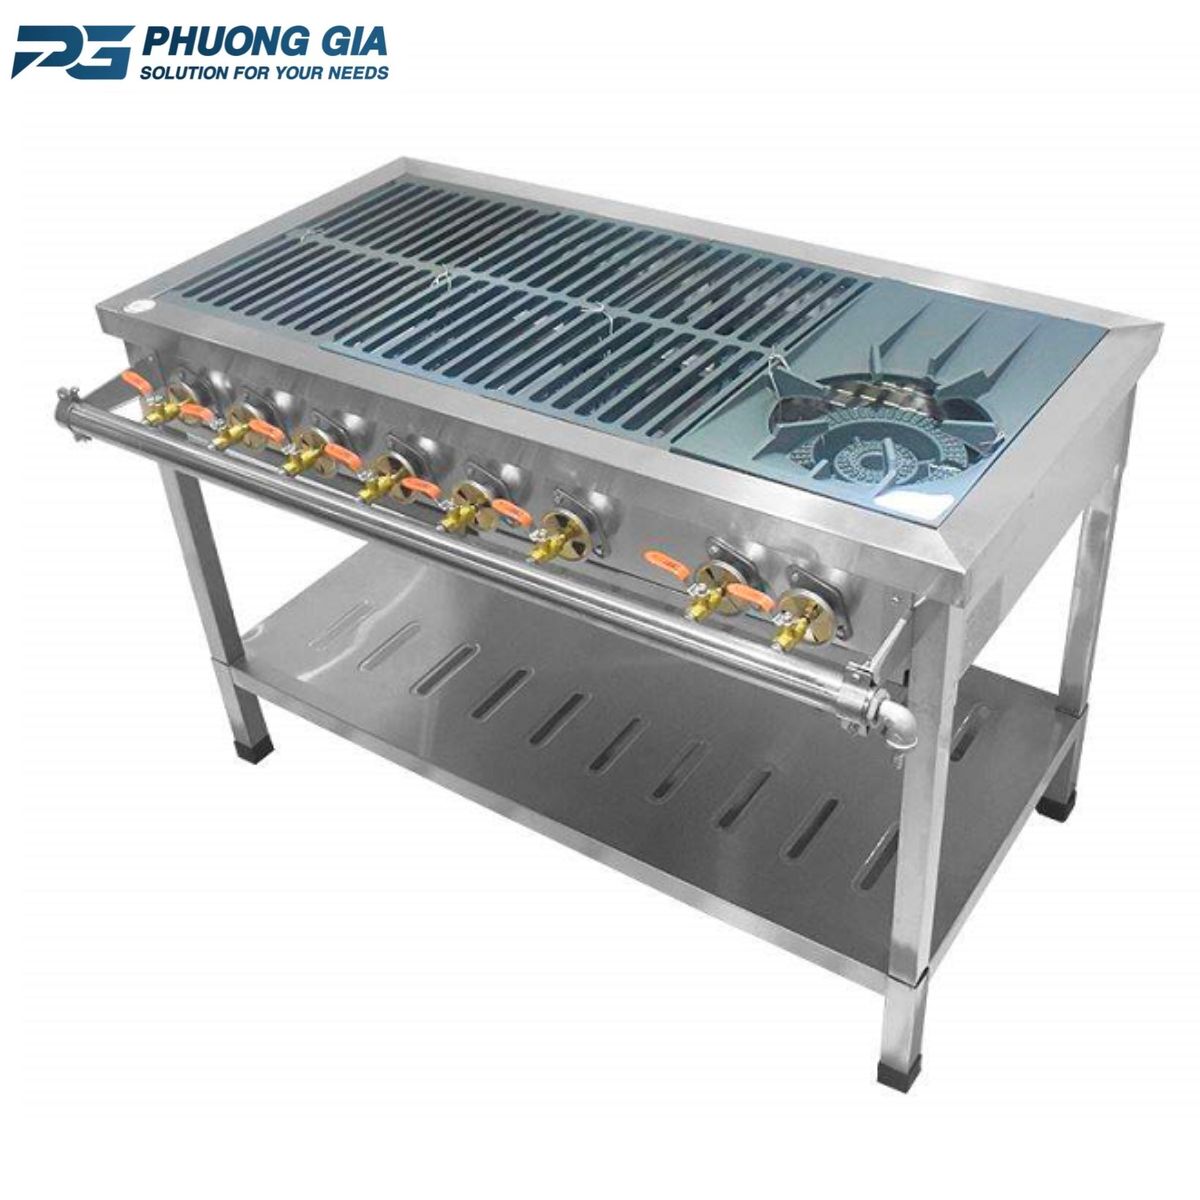 Bếp nướng điện cho phép điều chỉnh nhiệt độ một cách chính xác, giúp nấu nướng thực phẩm đạt chất lượng cao